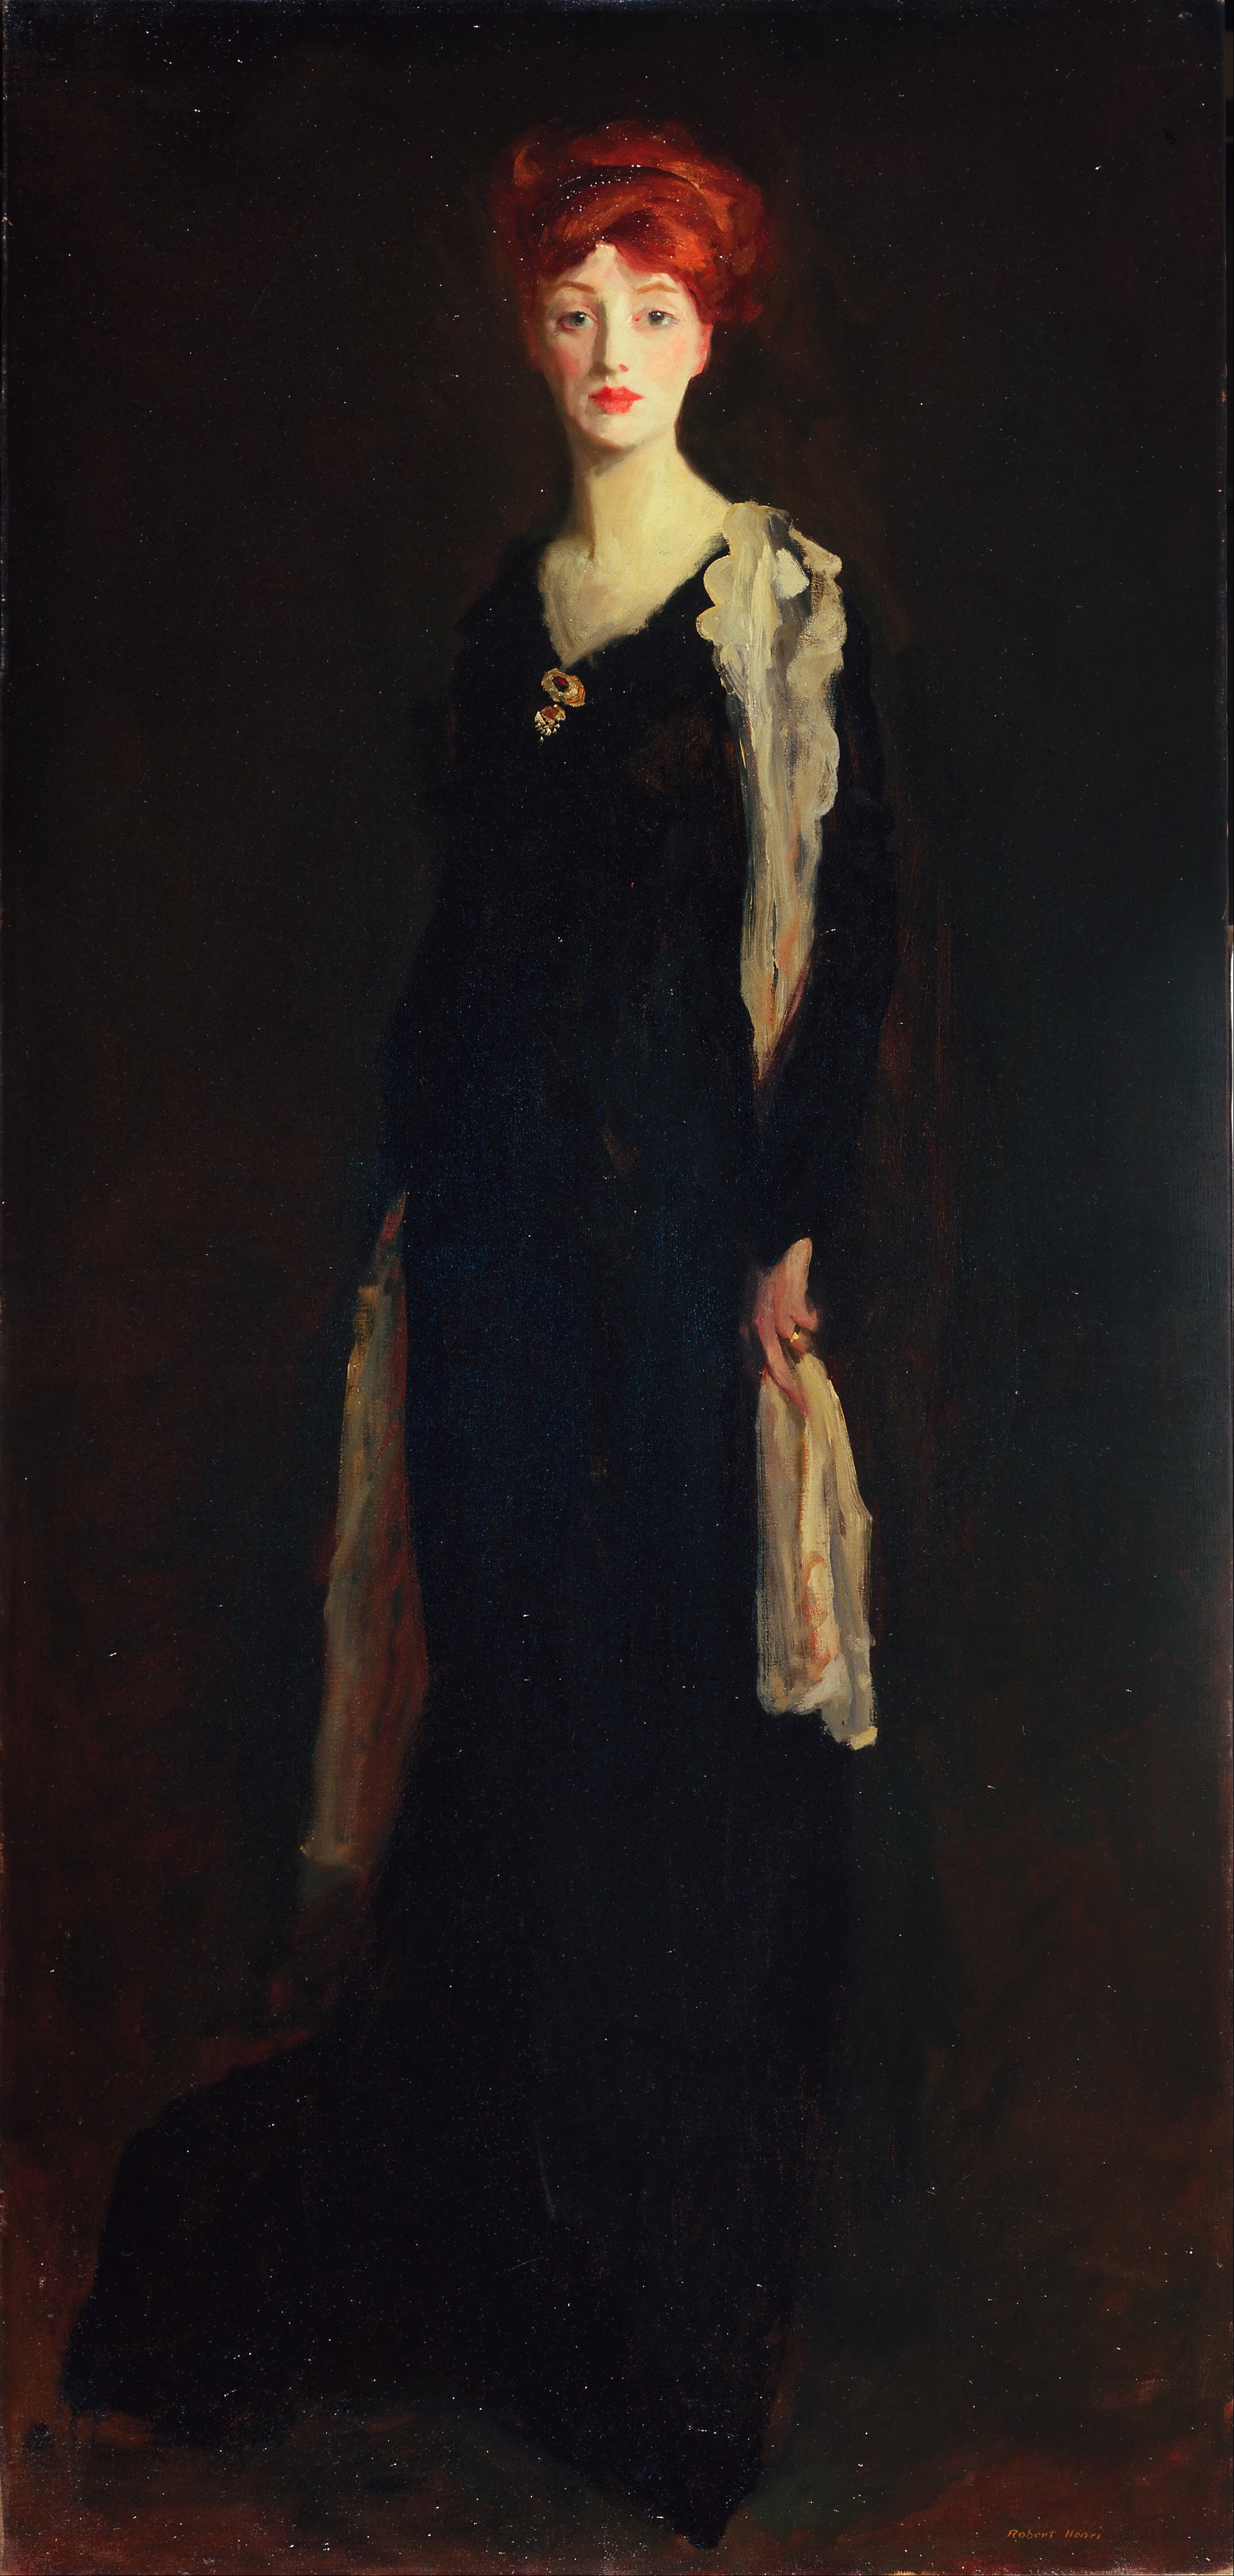 İspanyol Eşarbı ile Siyahlı Kadın (Eşarbı ile Siyahlar içinde O) by Robert Henri - 1910 - 196.2 x 94 cm 